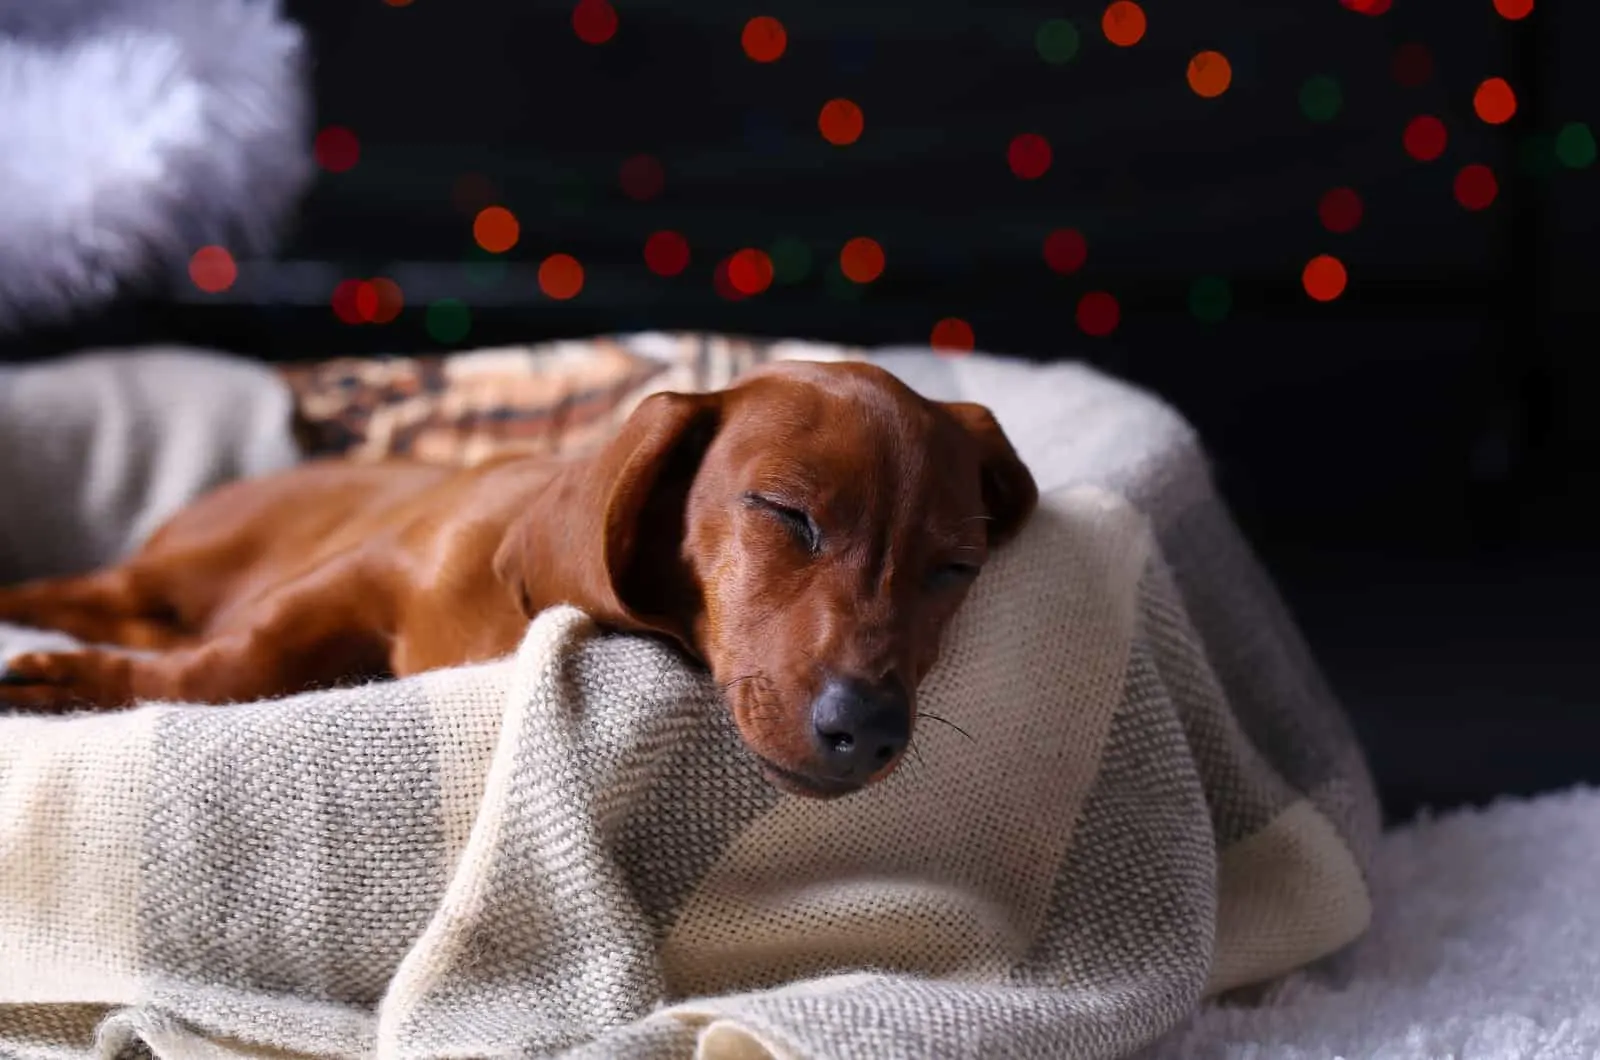 dachshund sleeping in dog bed